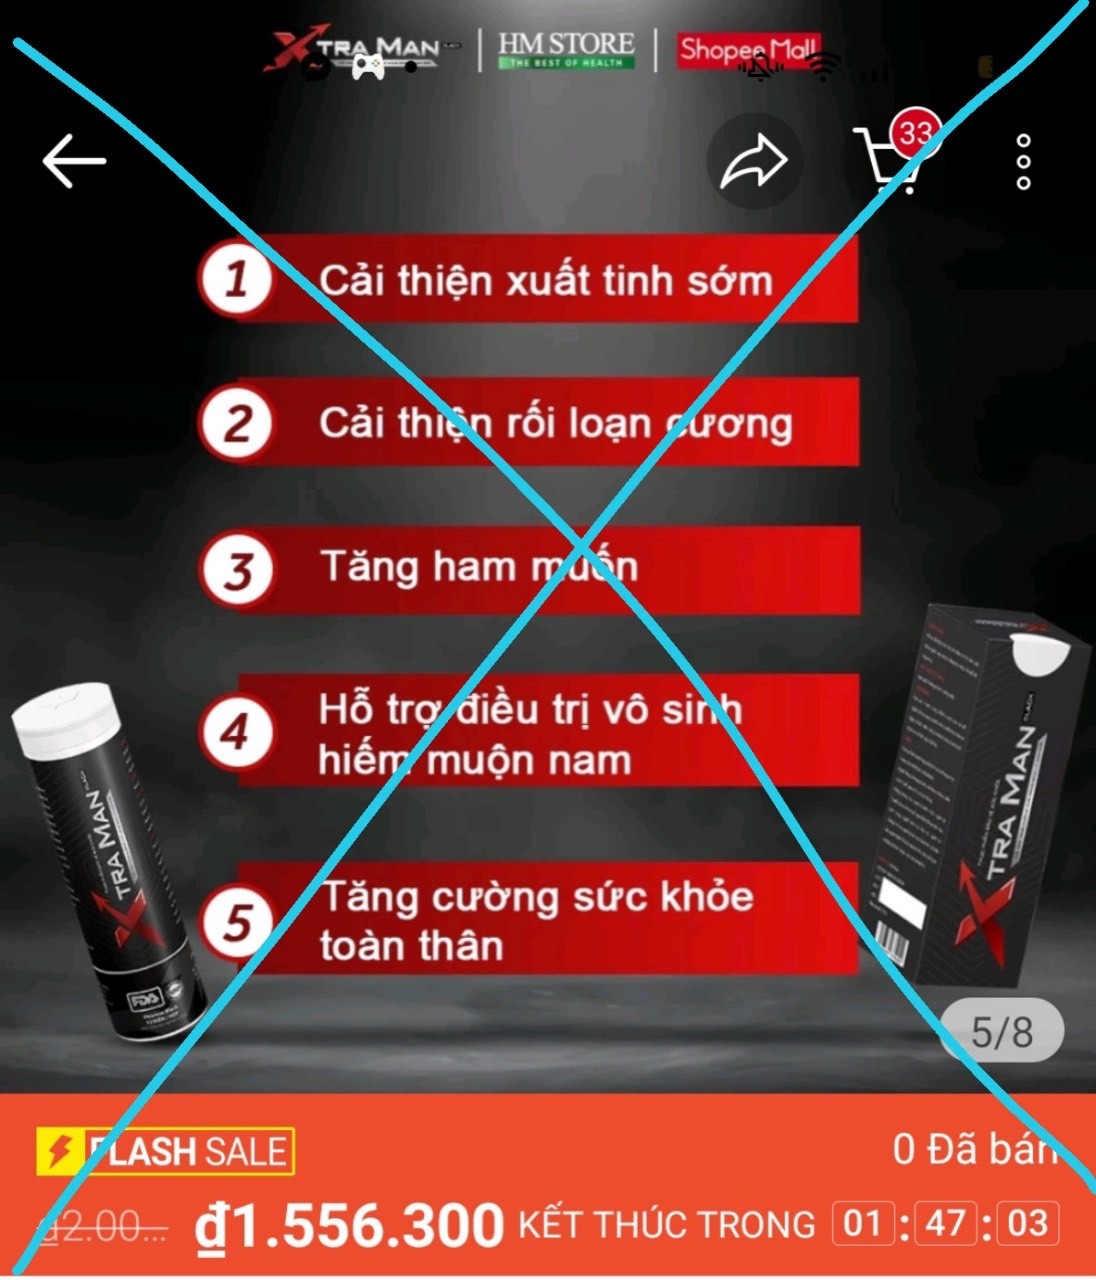 TPBVSK Xtraman, Xtraman black bất chấp quảng cáo “thổi phồng” công dụng, lừa dối người tiêu dùng?